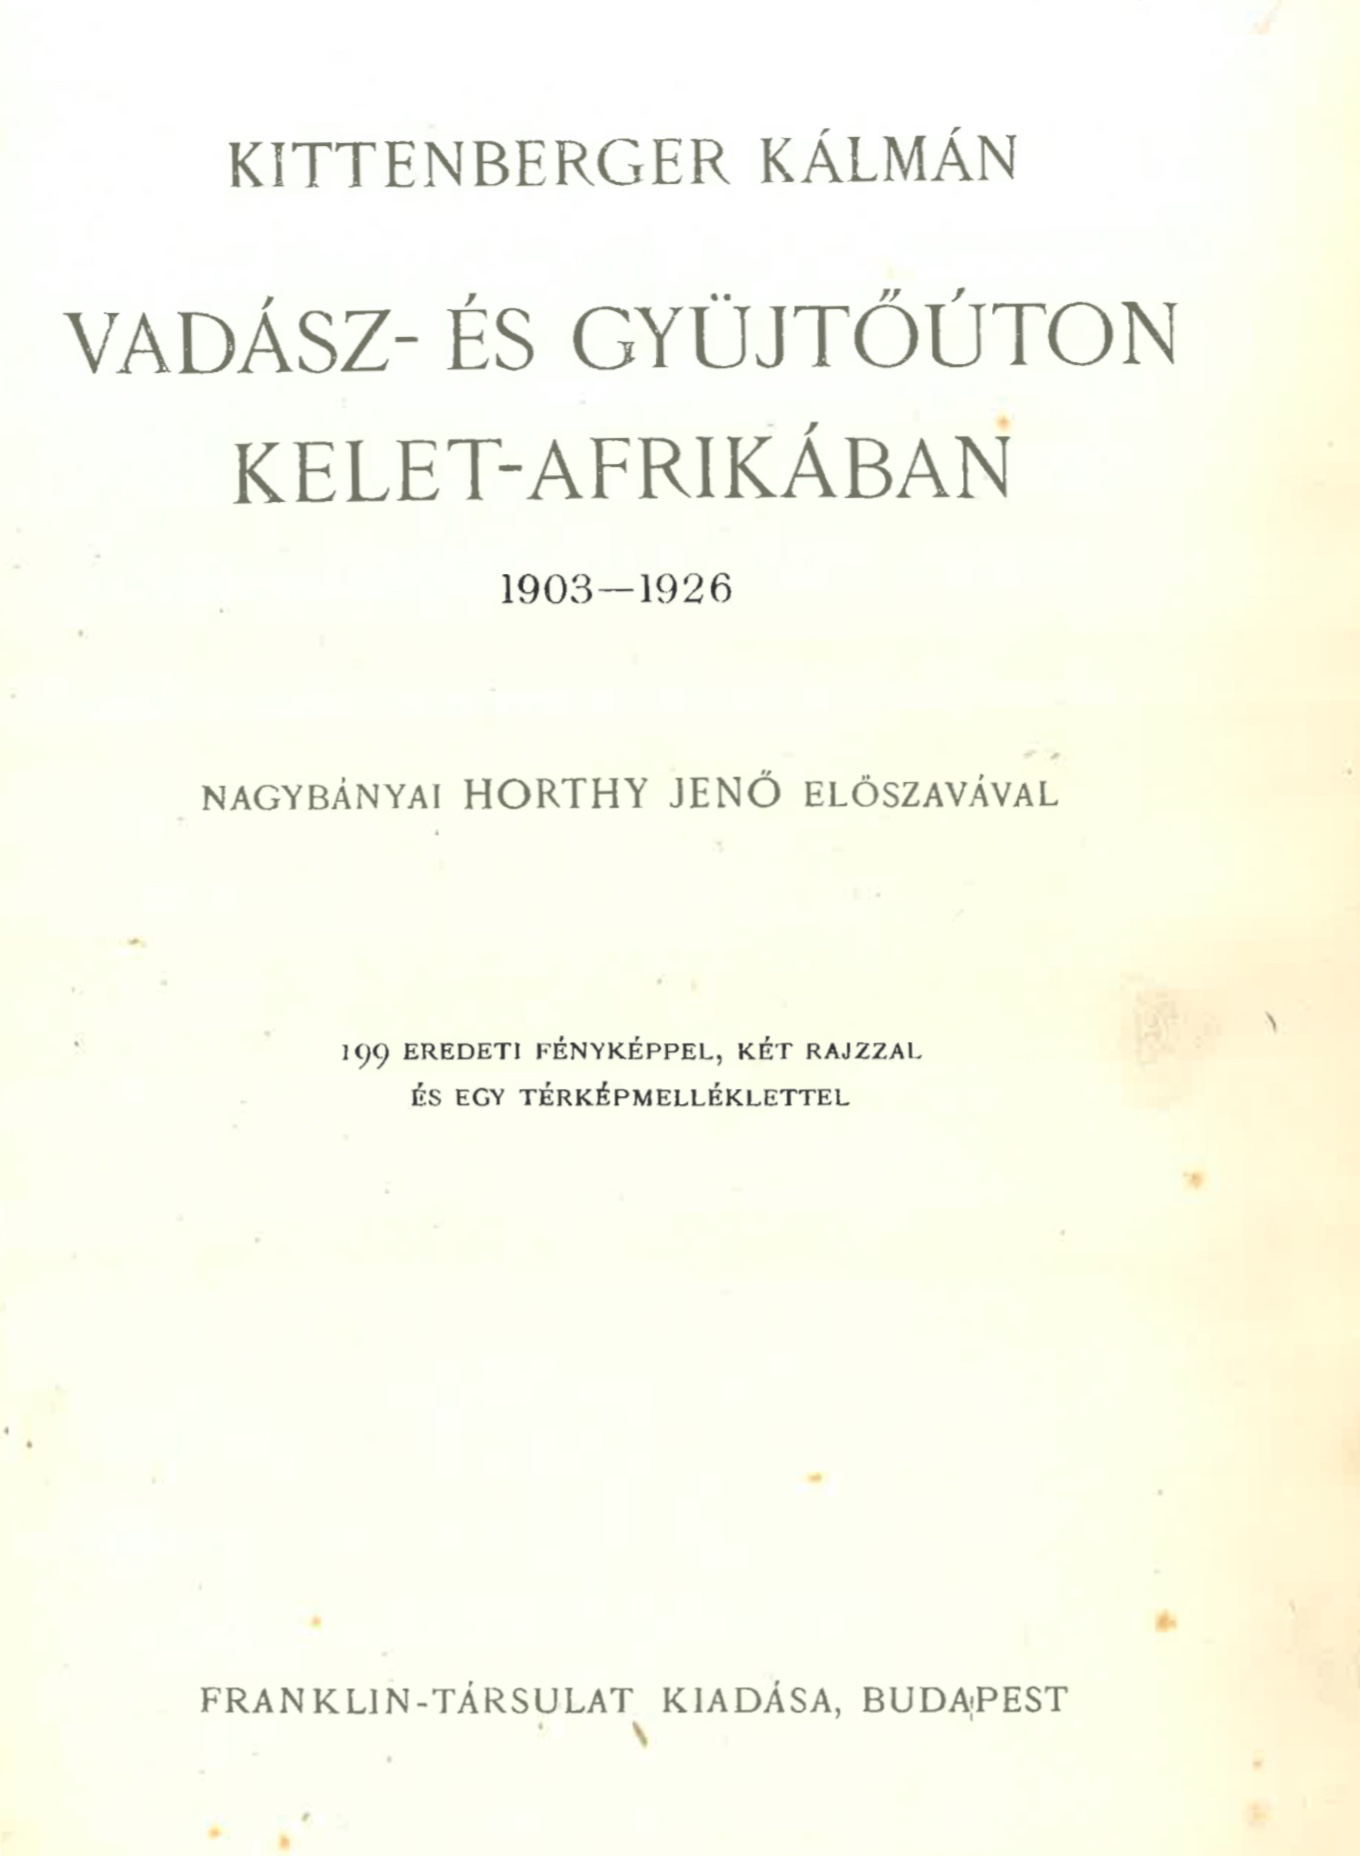 1. Vadász- és gyűjtőúton Kelet-Afrikában, 1903–1926, Budapest, Franklin, [1927]. – Törzsgyűjtemény 